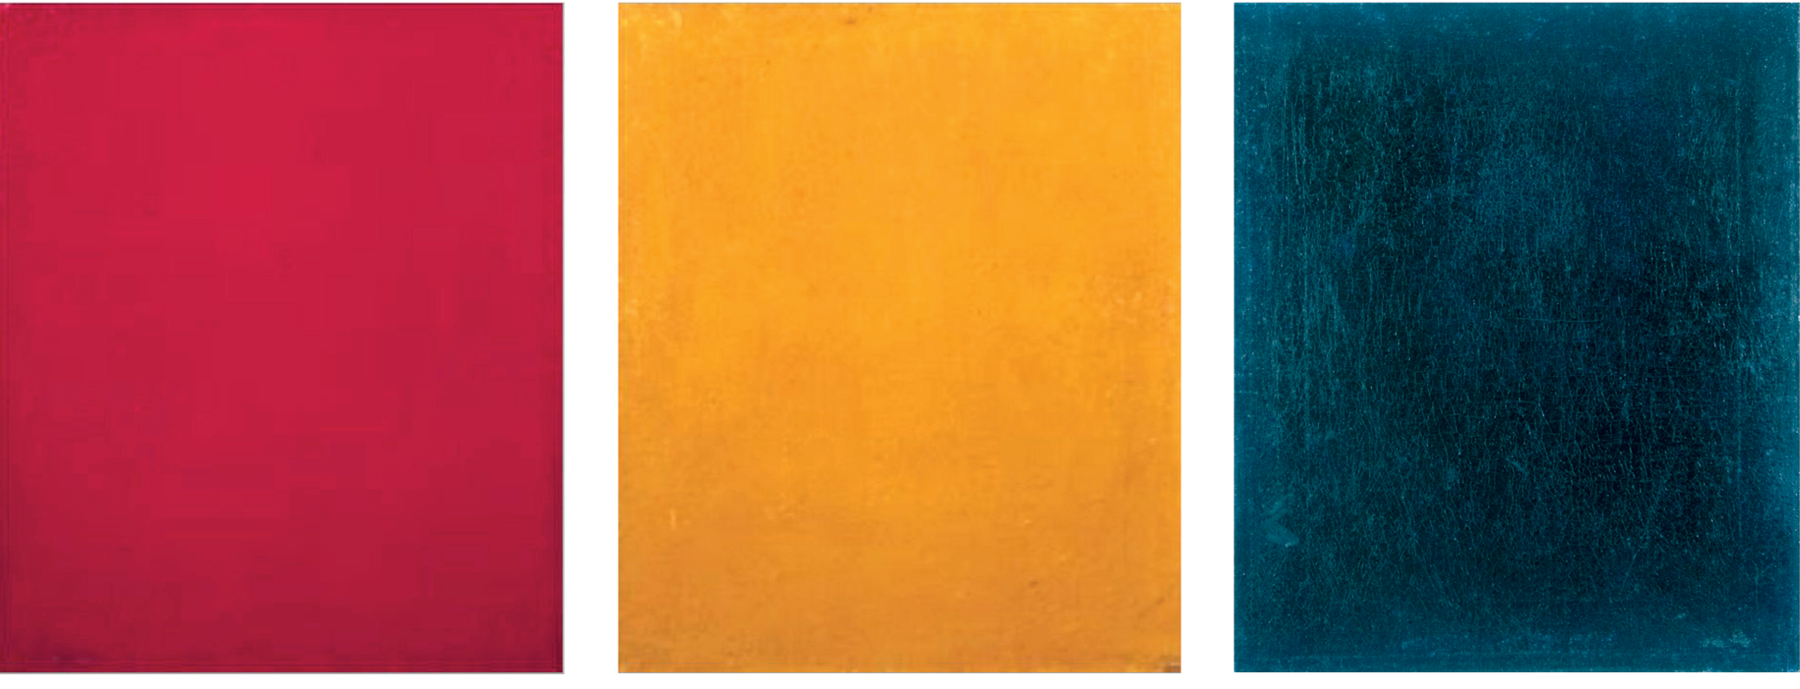 Ilustração. Três retângulos com texturas, um ao lado do outro. Da esquerda para a direita: um retângulo vermelho, um retângulo amarelo e um retângulo azul.